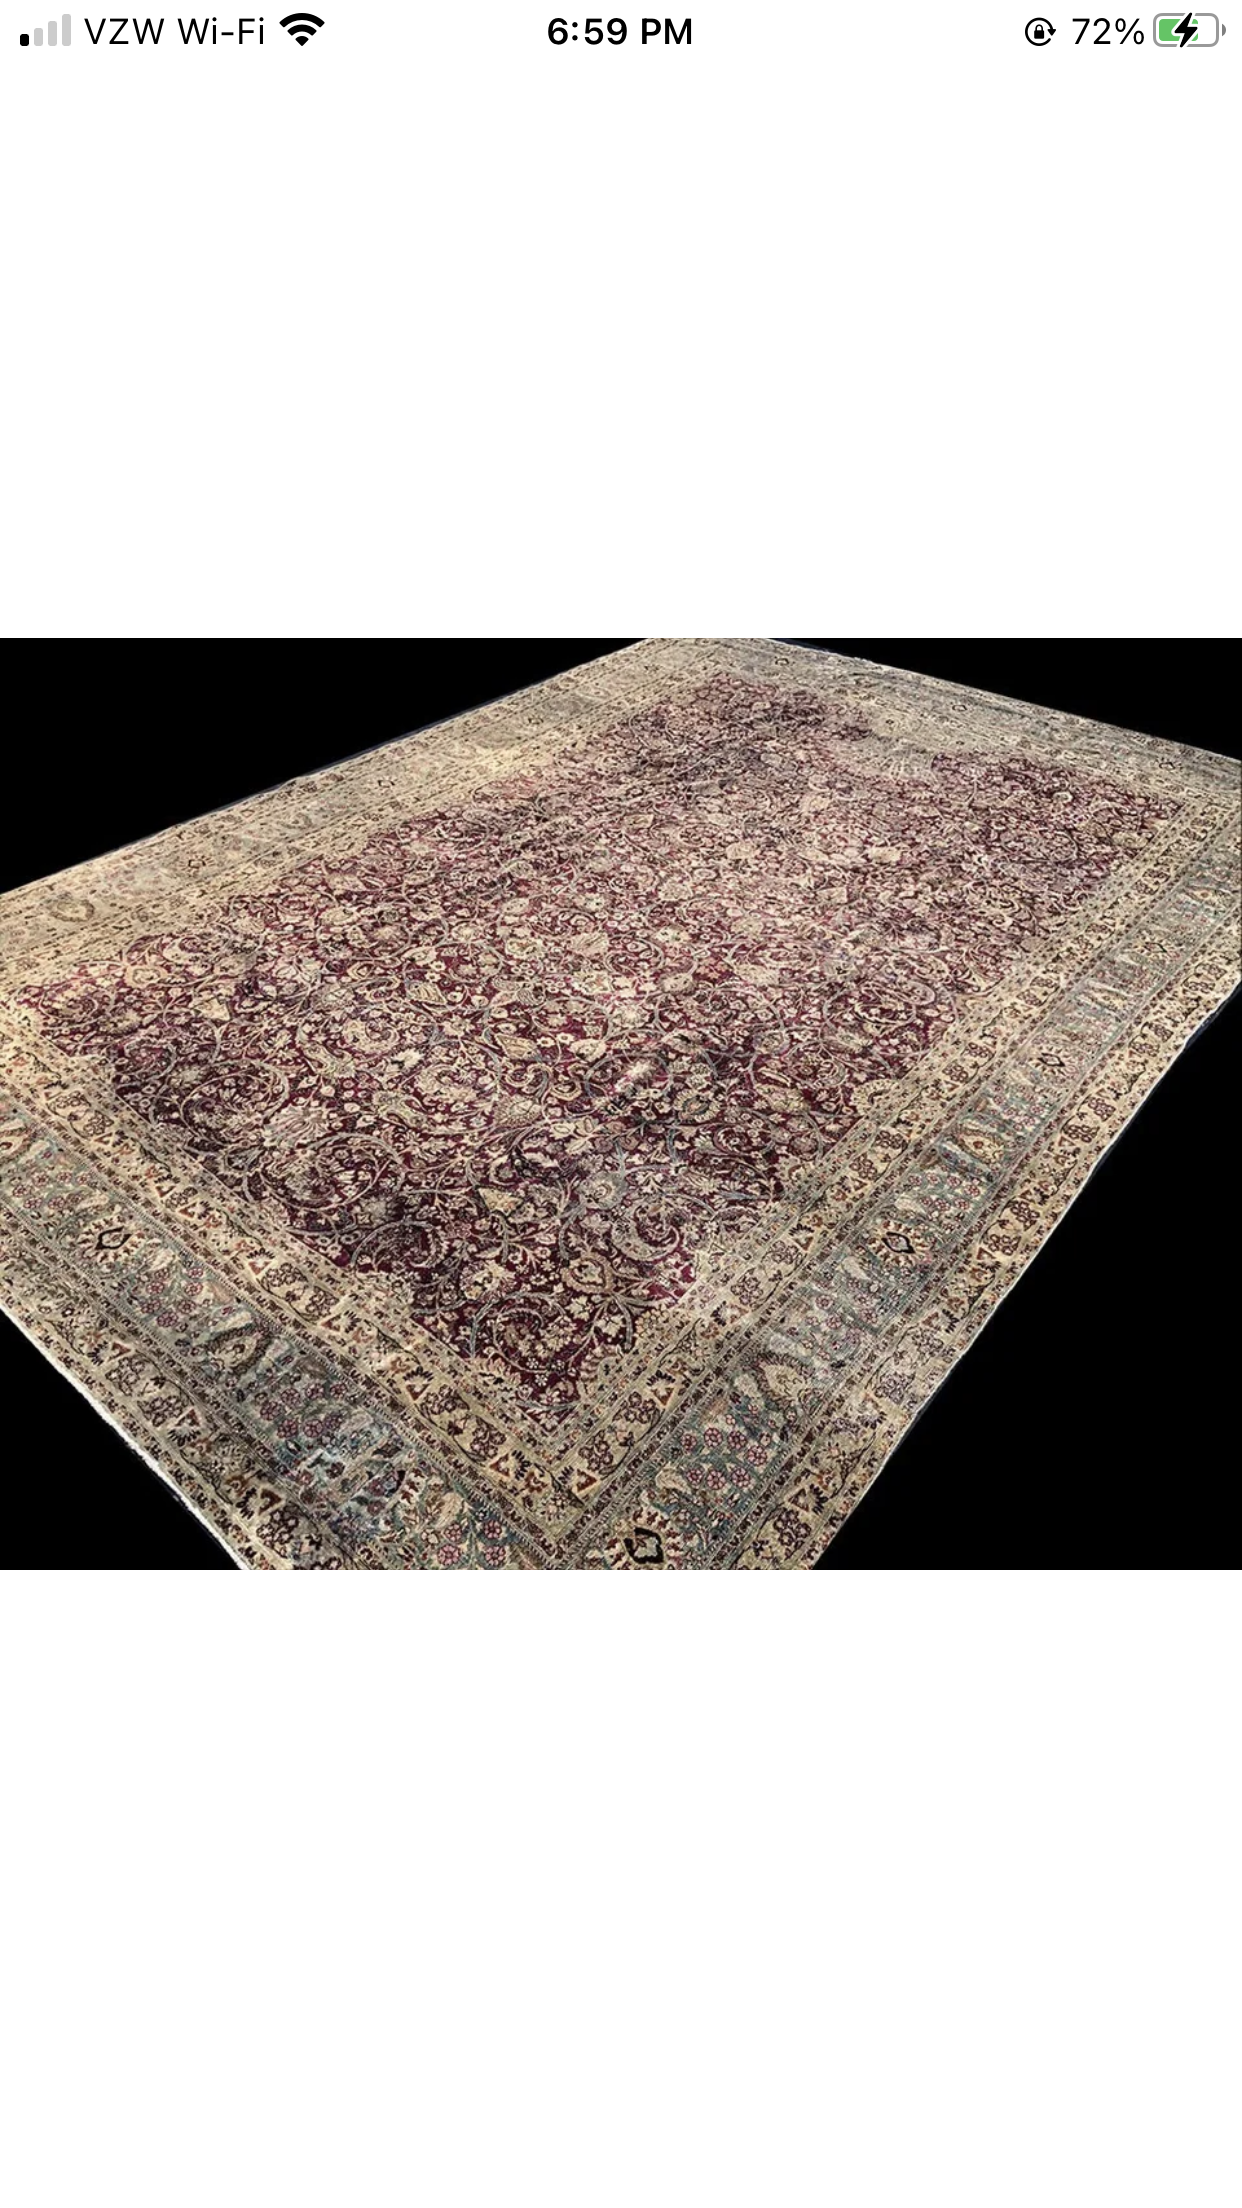 Antique 10’x14’ Distressed Persian Mashad Rug